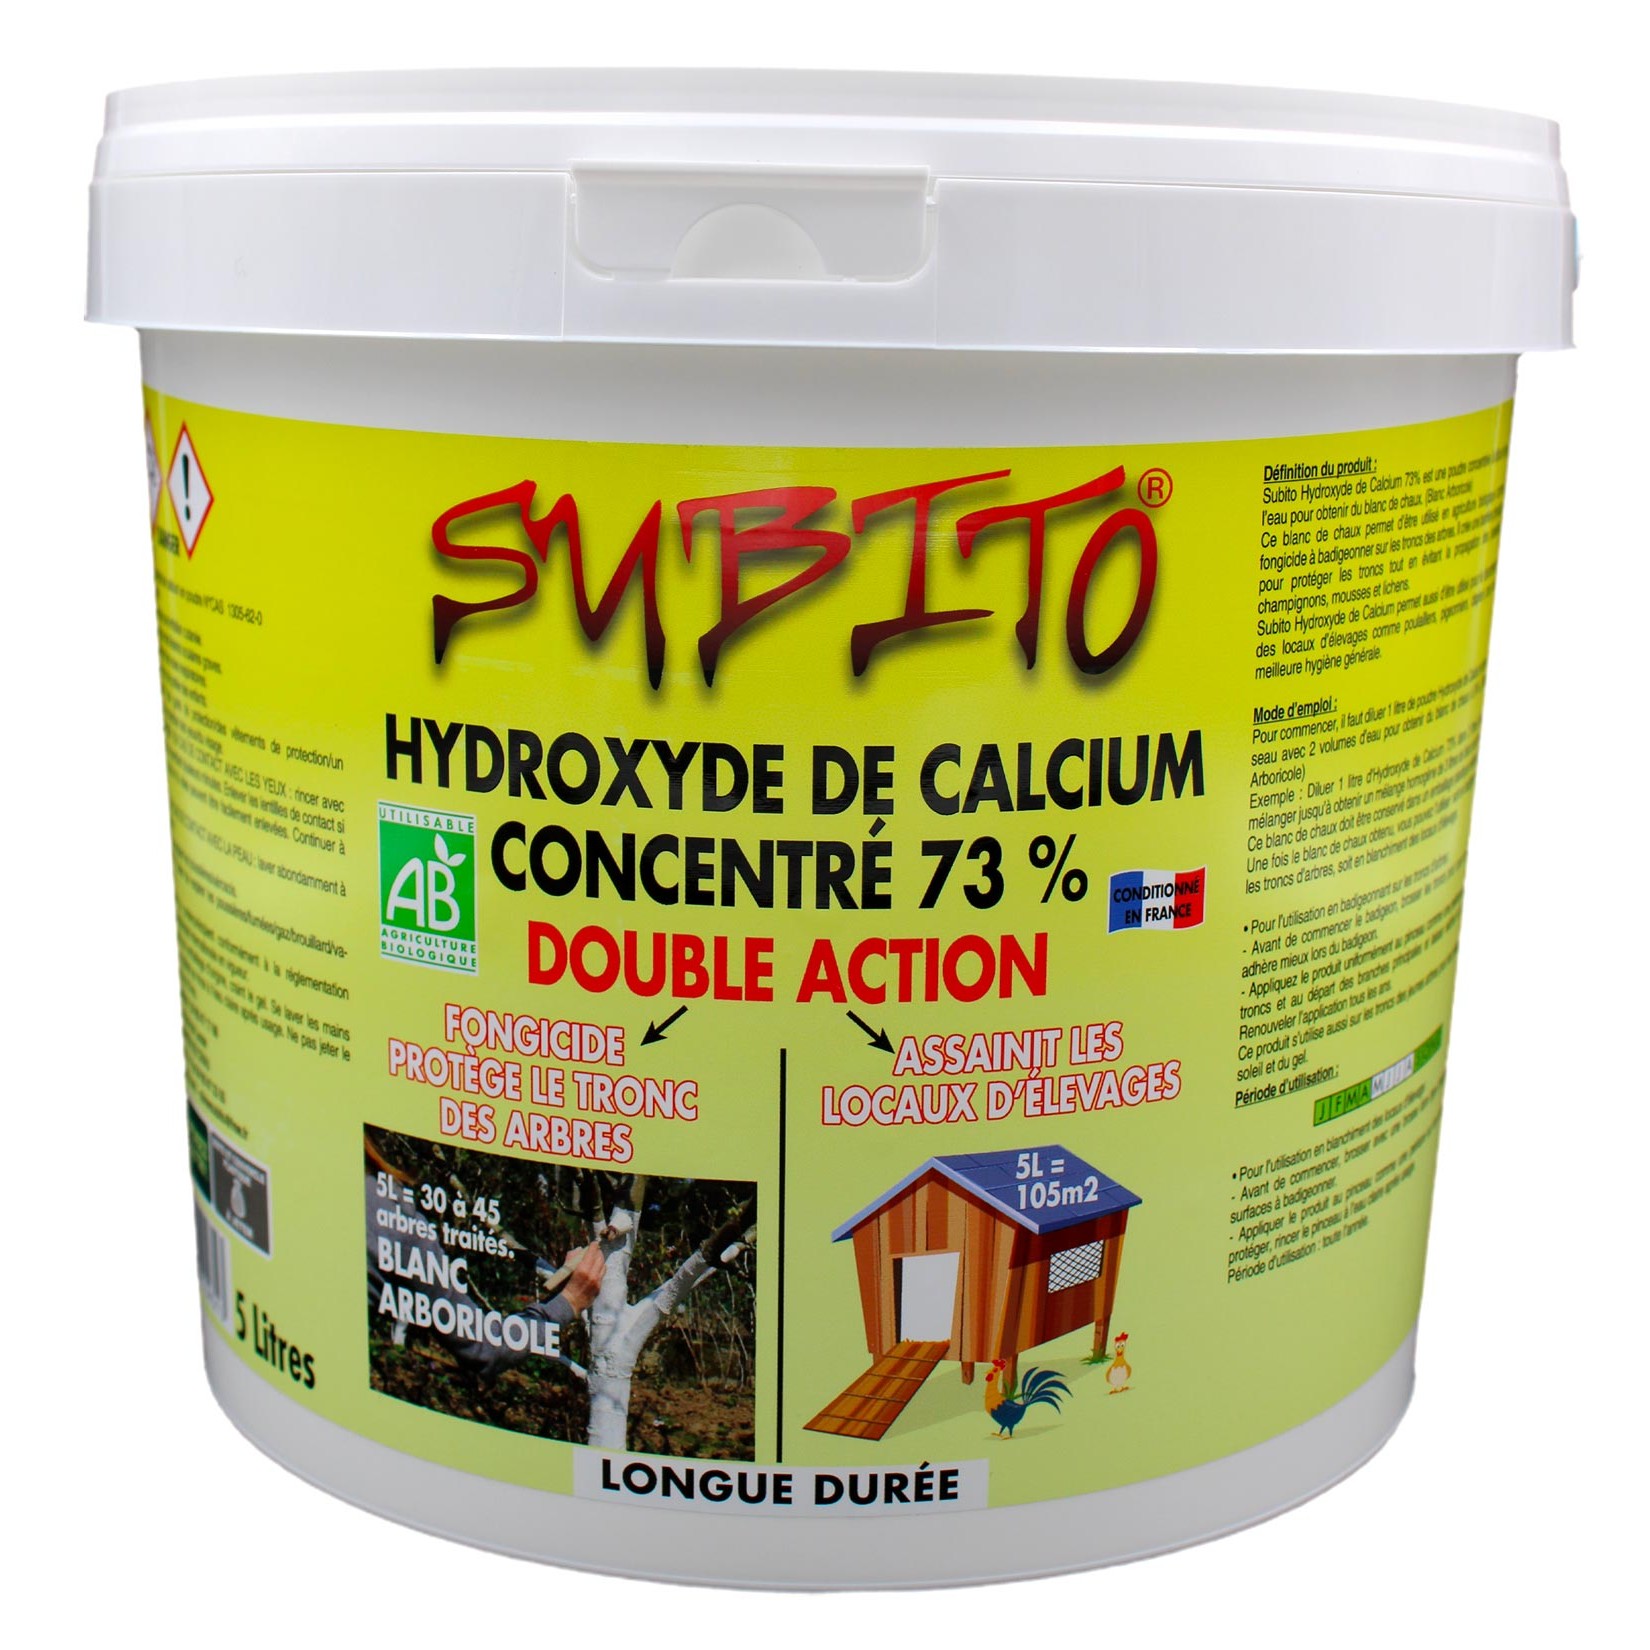 Hydroxyde de calcium concentré à 73% double action longue durée 5L Subito | Insecticide Antinuisible Qualité Professionnelle